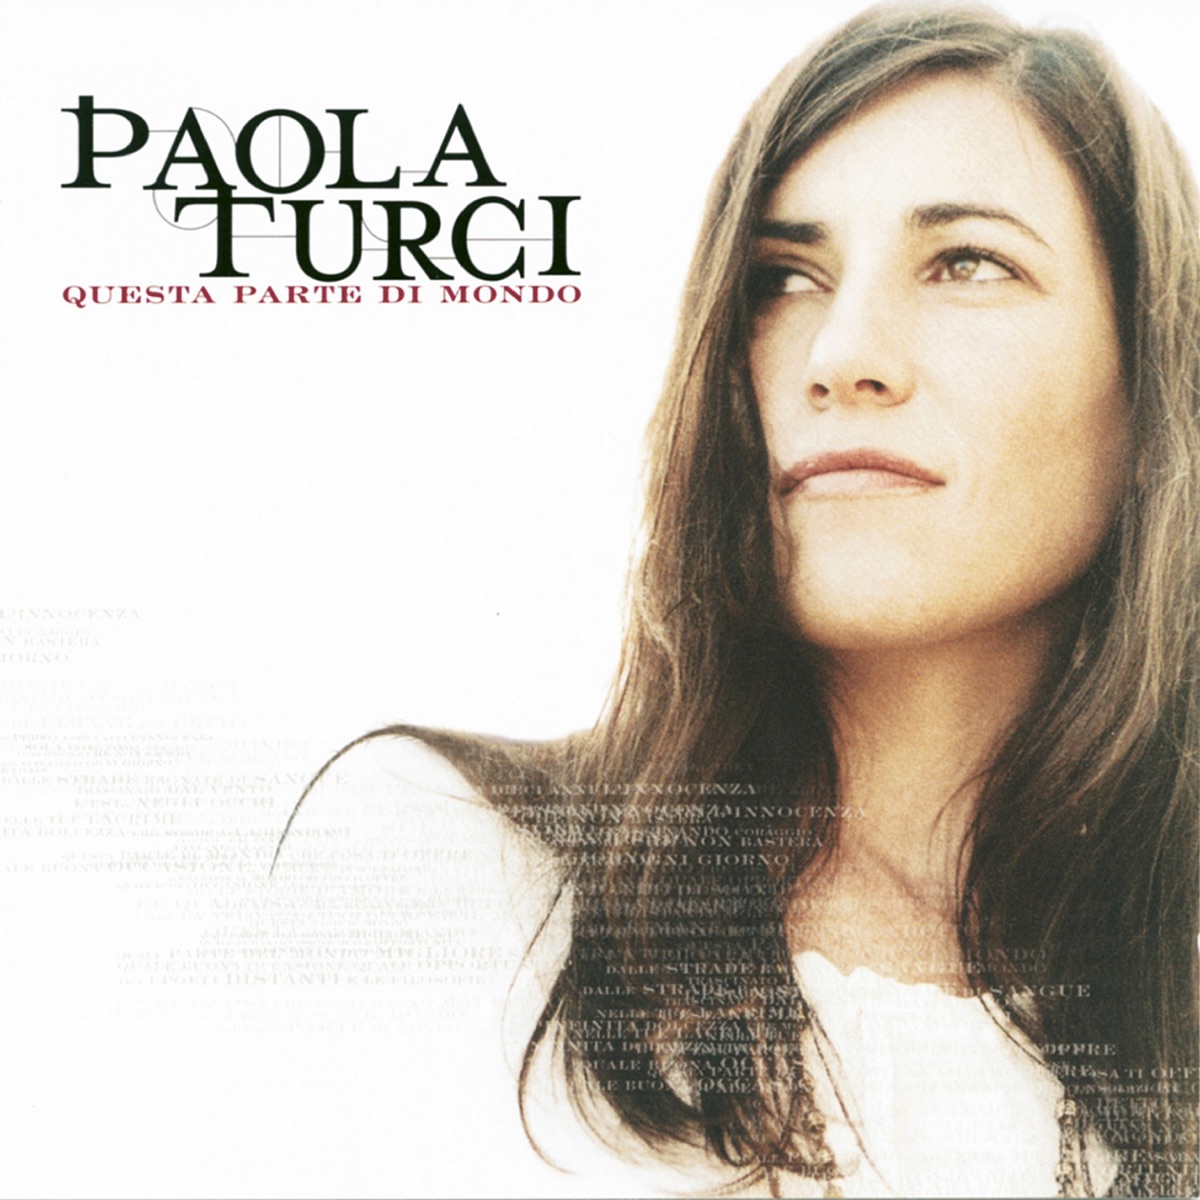 Fatti bella per te - Single - Album by Paola Turci - Apple Music